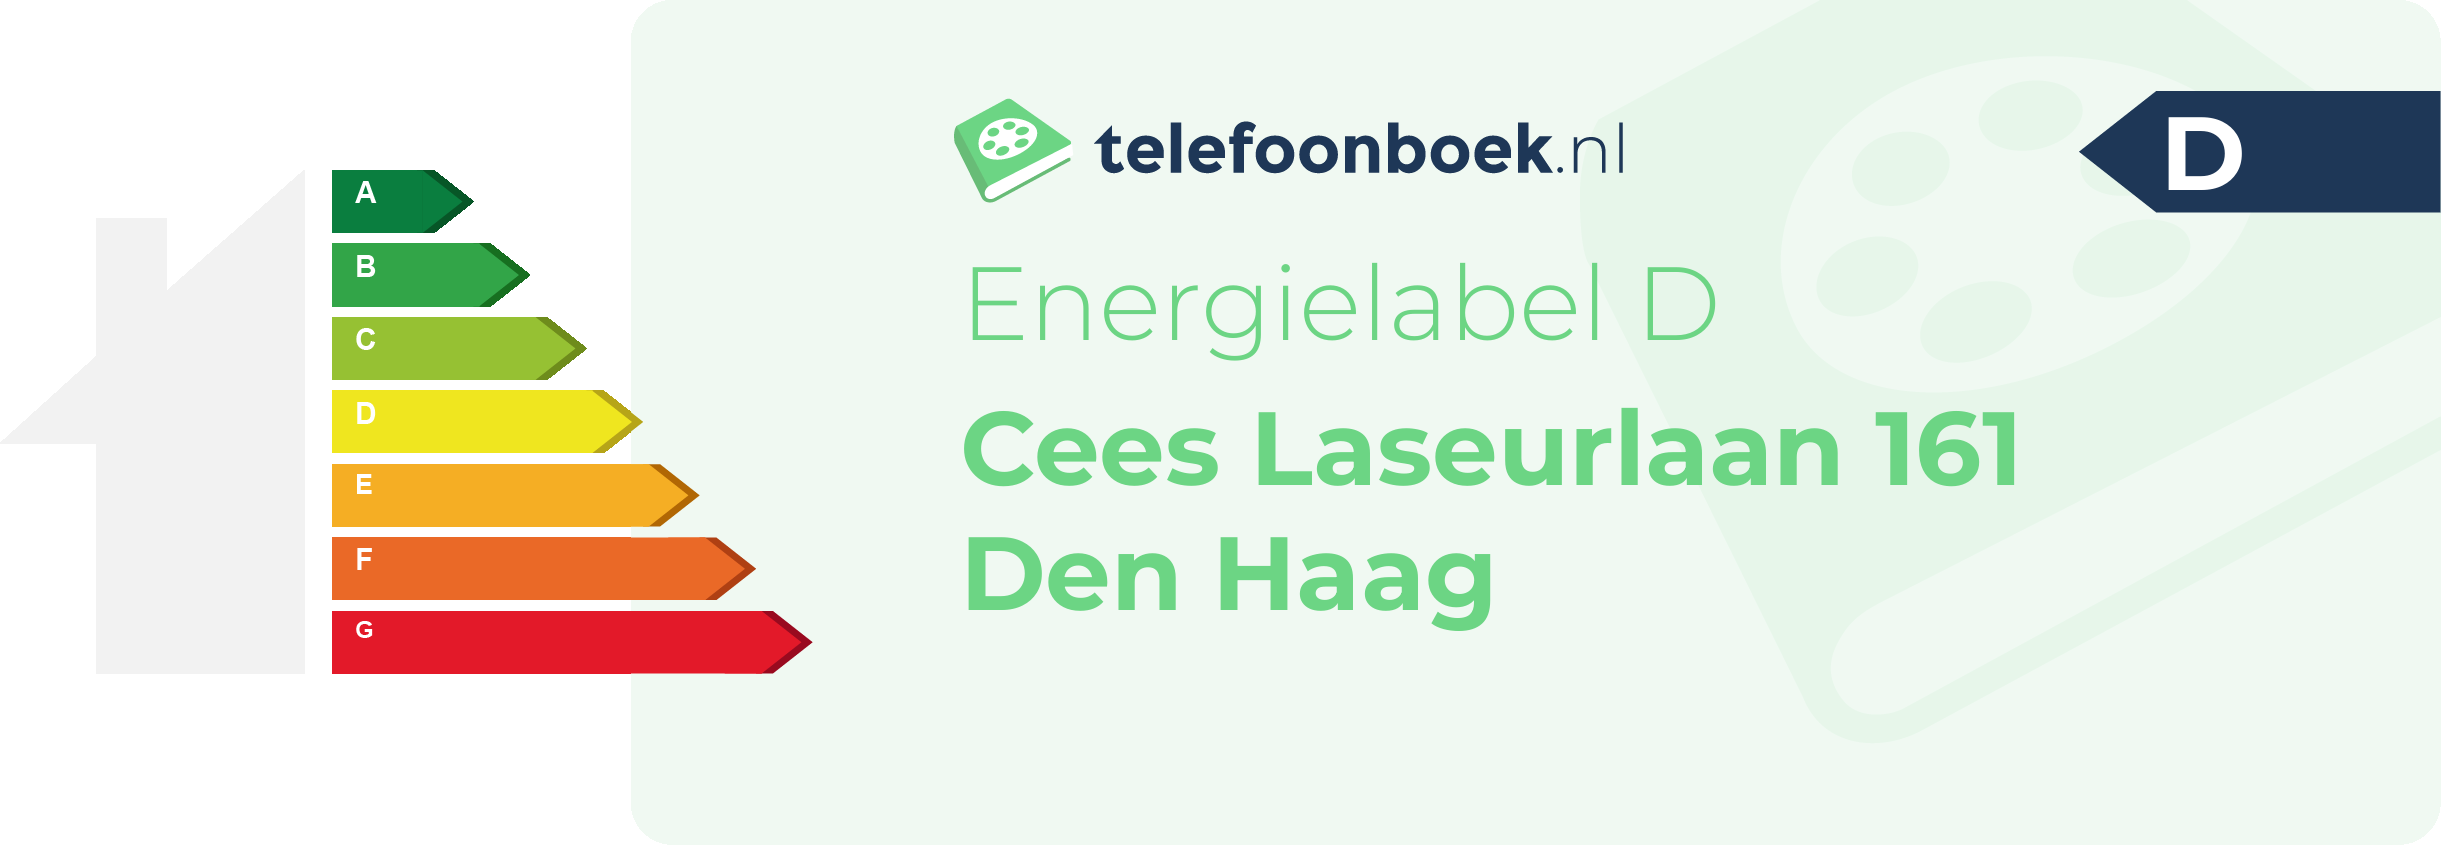 Energielabel Cees Laseurlaan 161 Den Haag